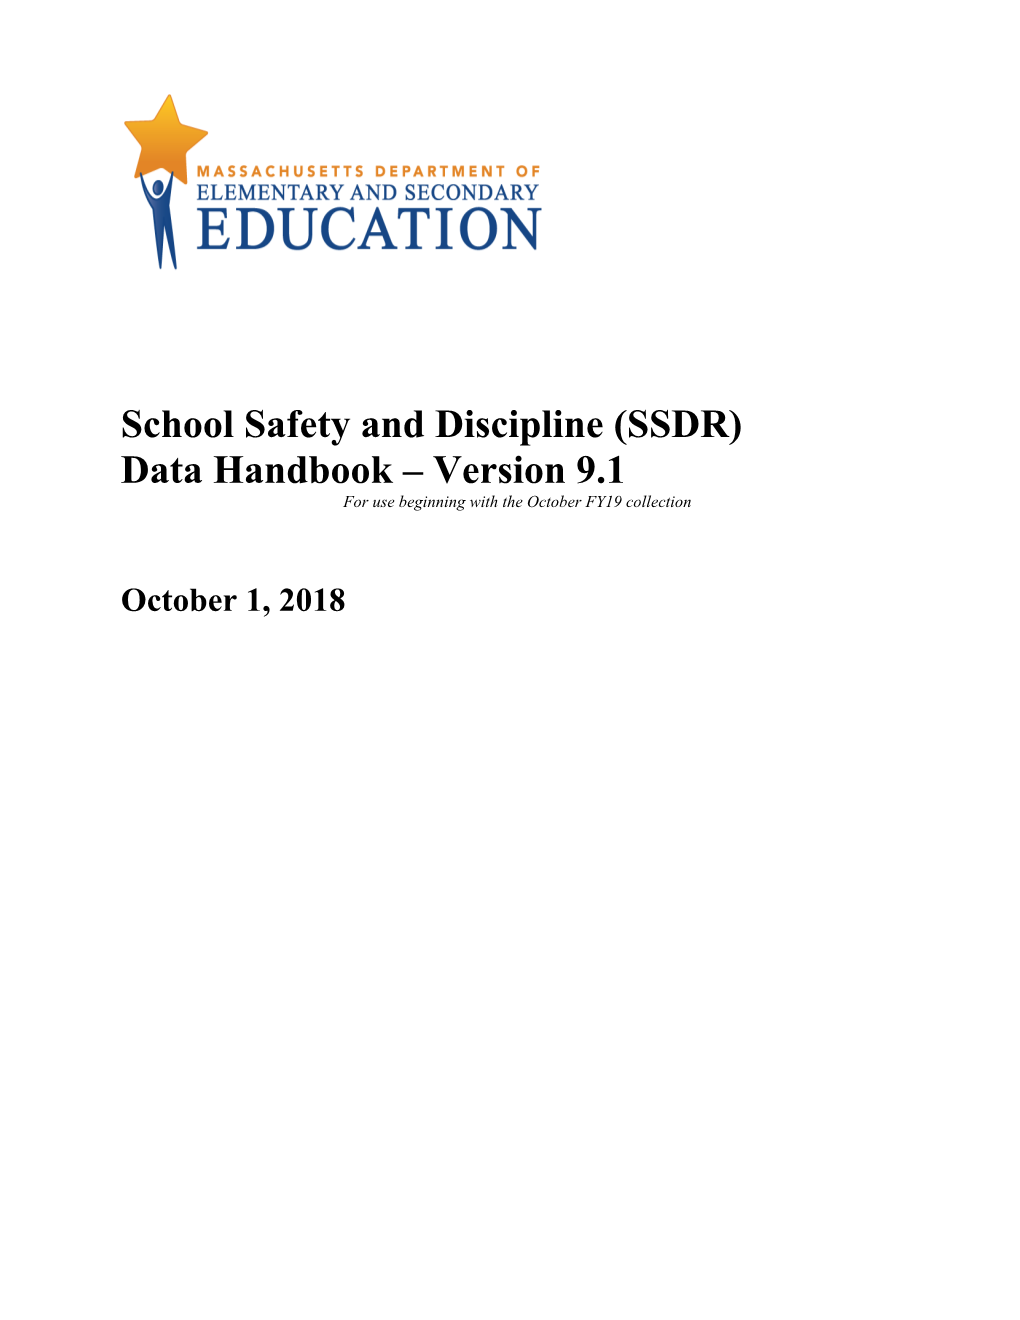 SSDR Data Handbook